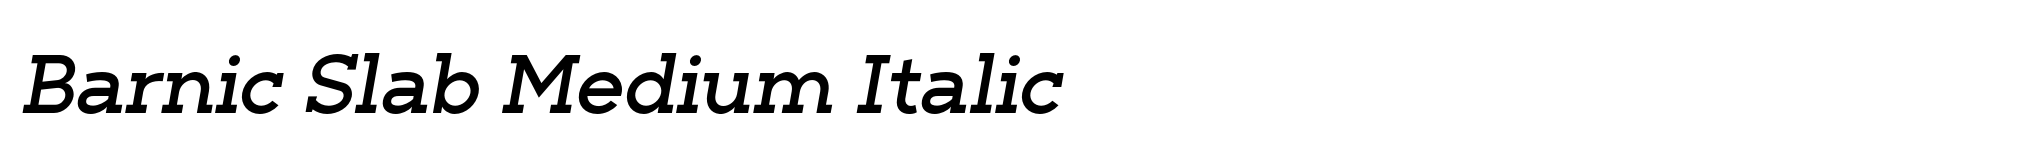 Barnic Slab Medium Italic image